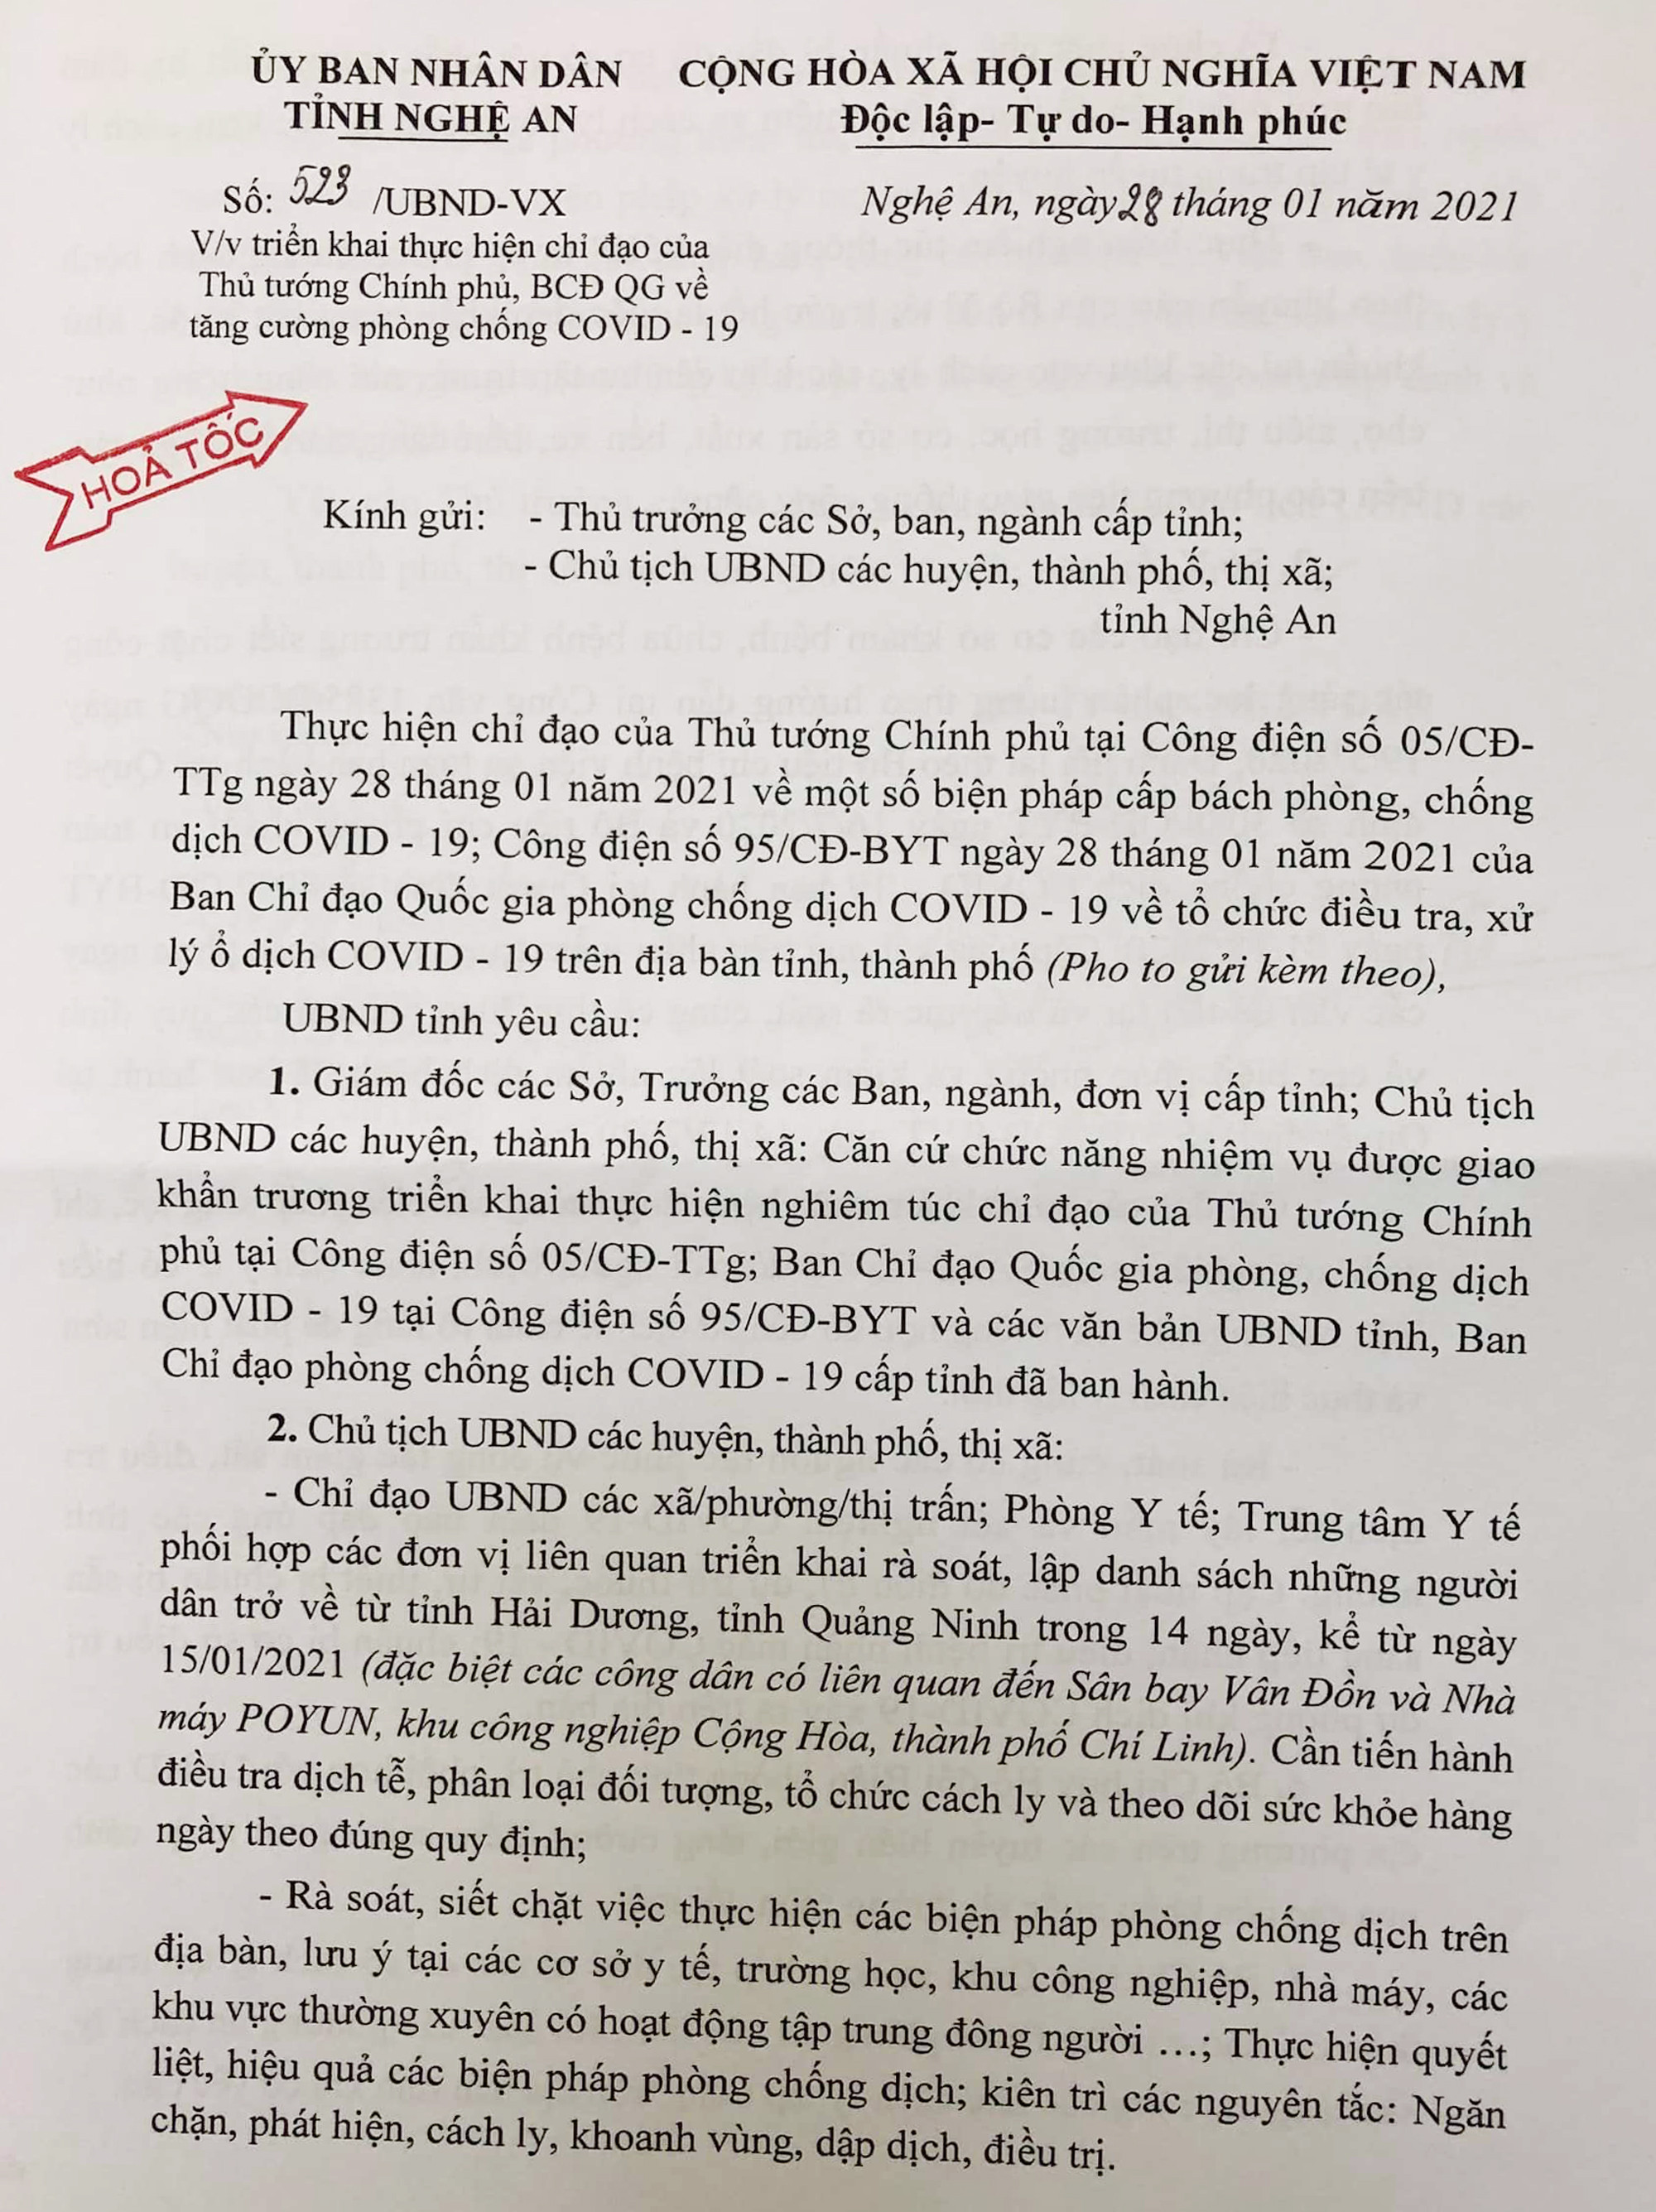 Công điện của UBND tỉnh Nghệ An về việc triển khai các biện pháp phòng chống COVID-19. Ảnh: Thành Chung